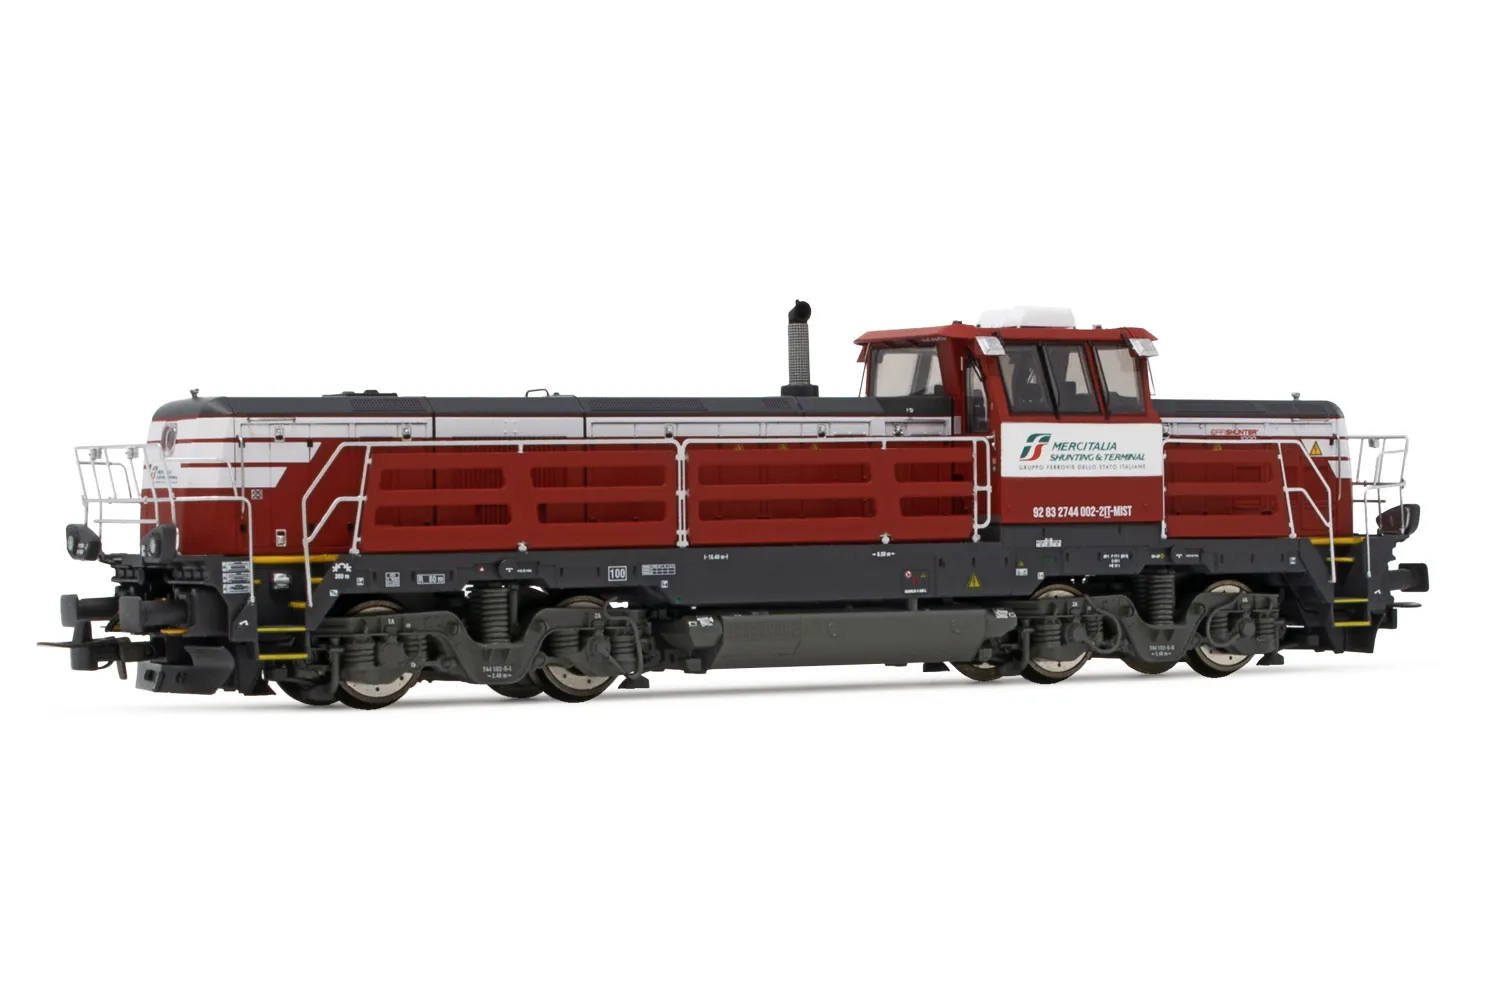 Mercitalia Shunting & Terminal, Diesellokomotive EffiShunter 1000 in rot/grauer Lackierung mit weißen Streifen, Ep. VI